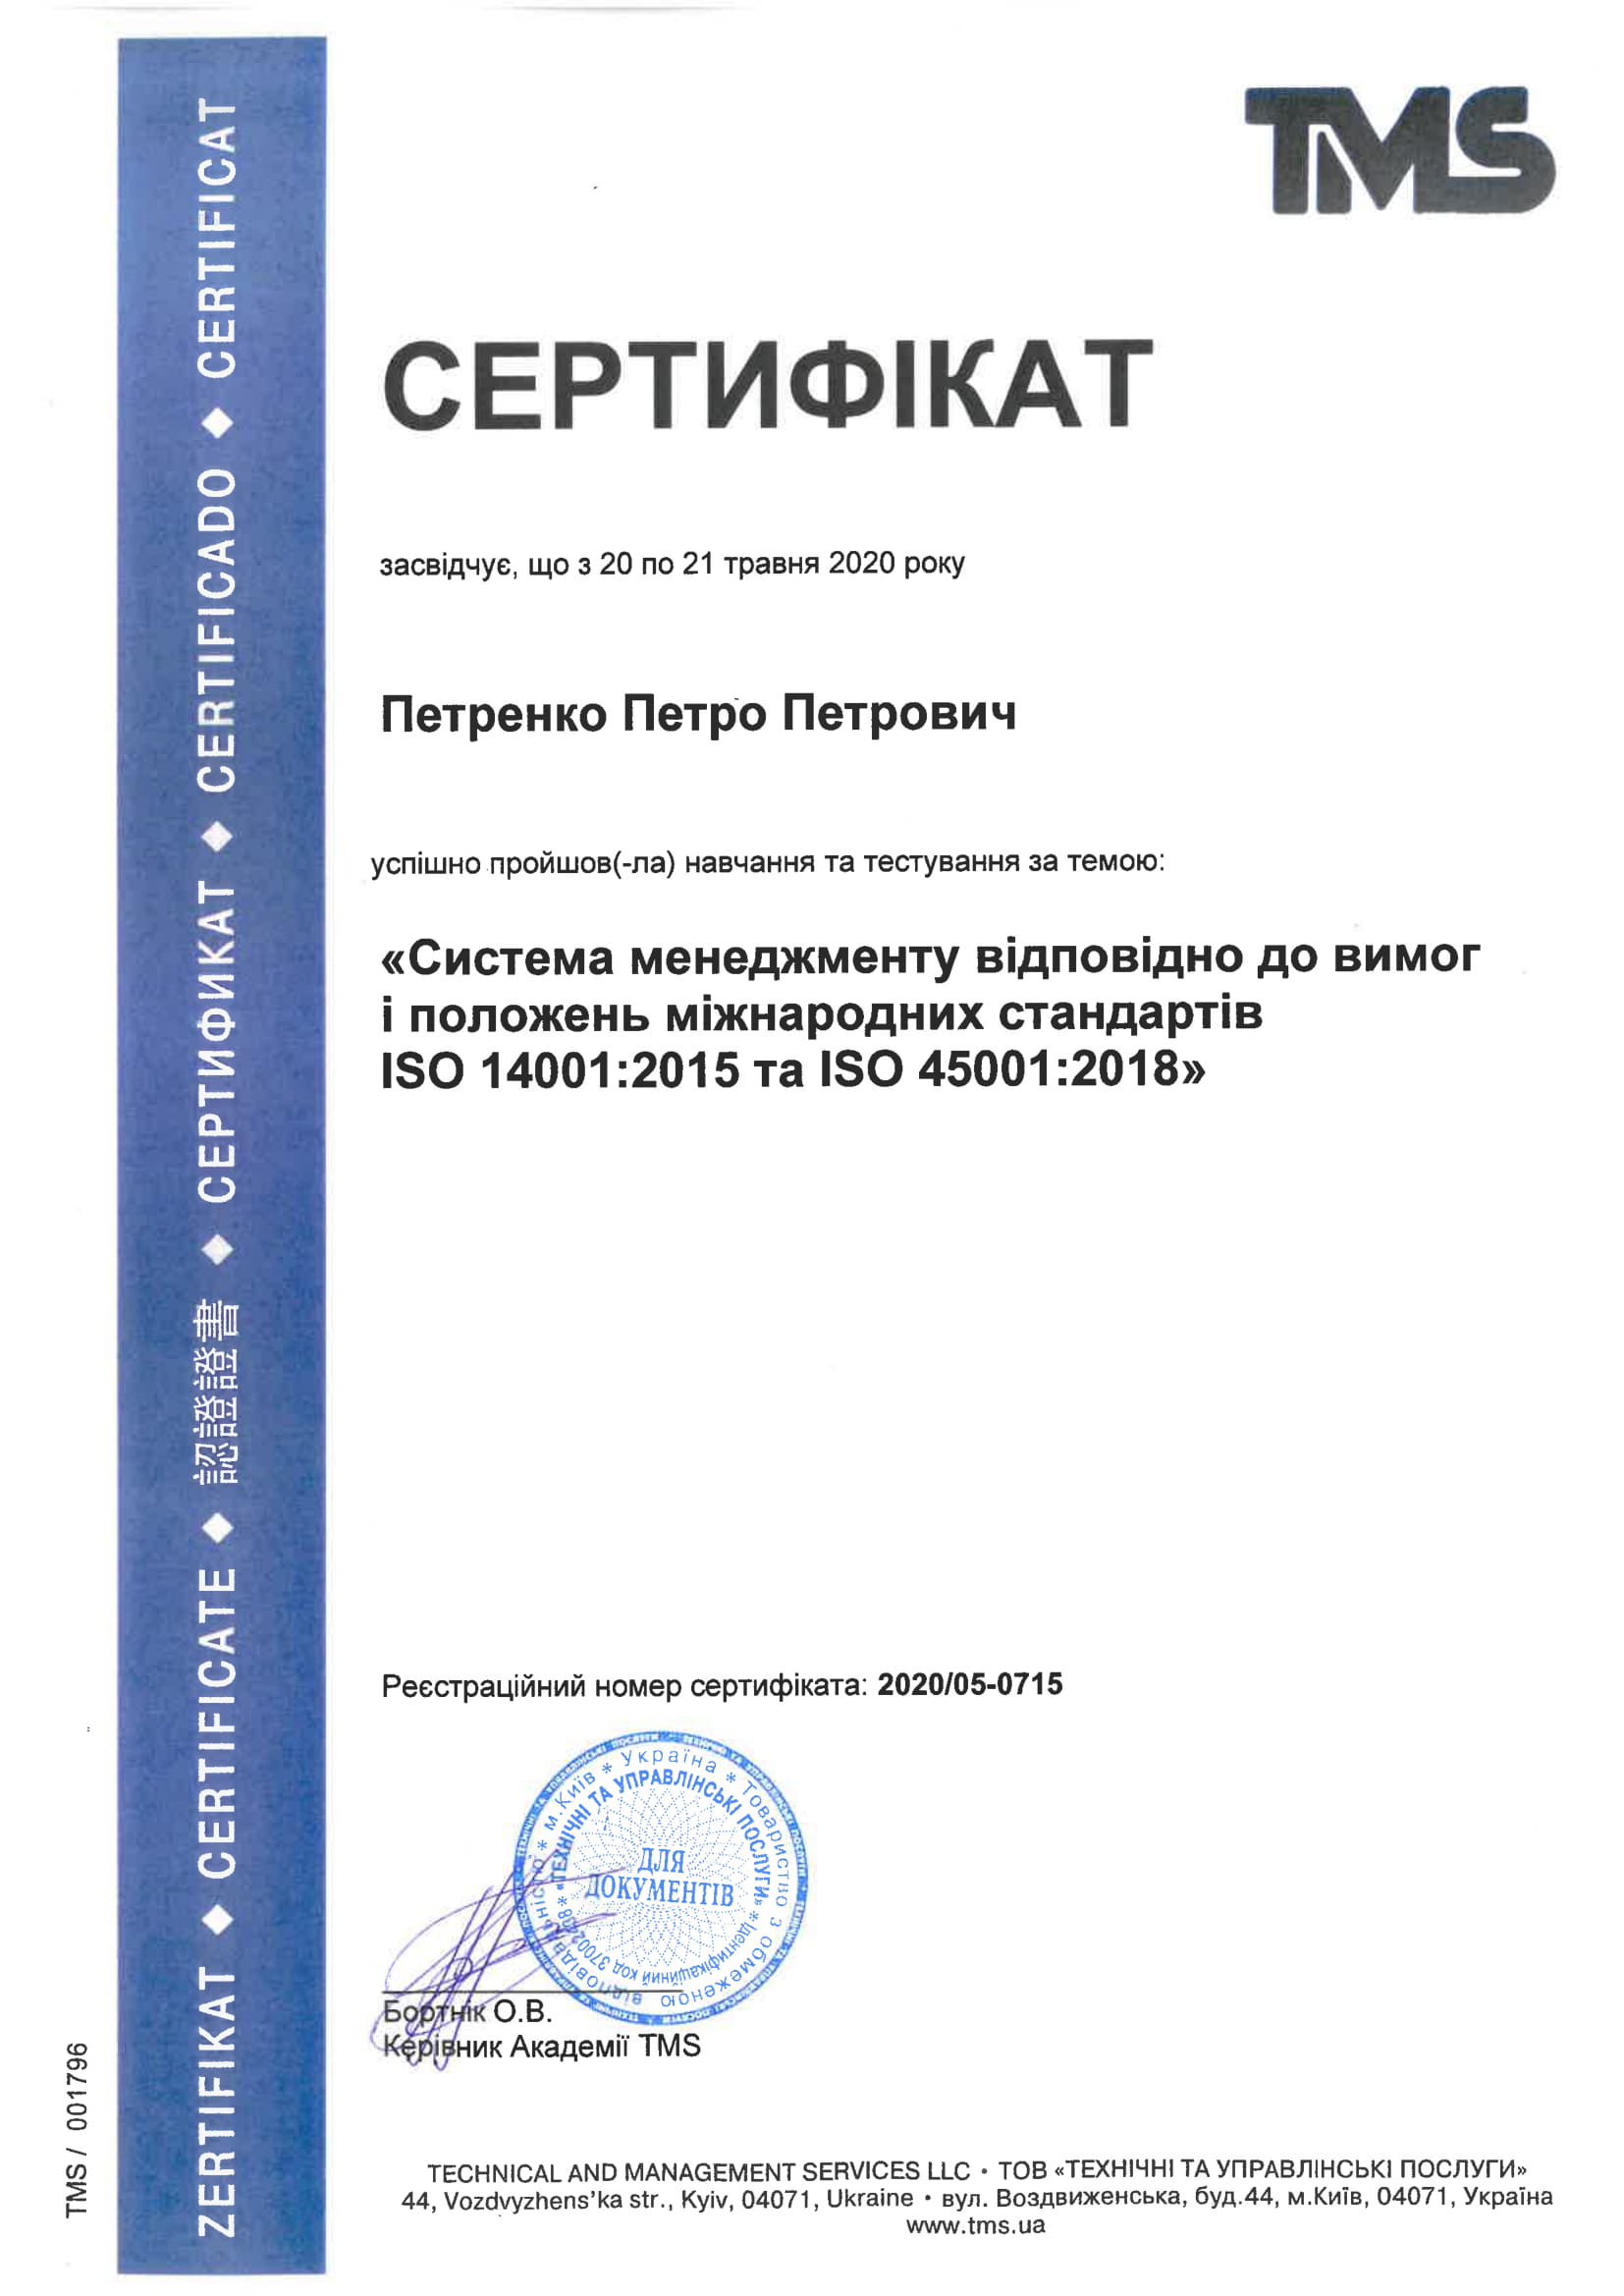 Пример сертификата о прохождении обучения по ISO 14001:2015 ISO 45001:2018